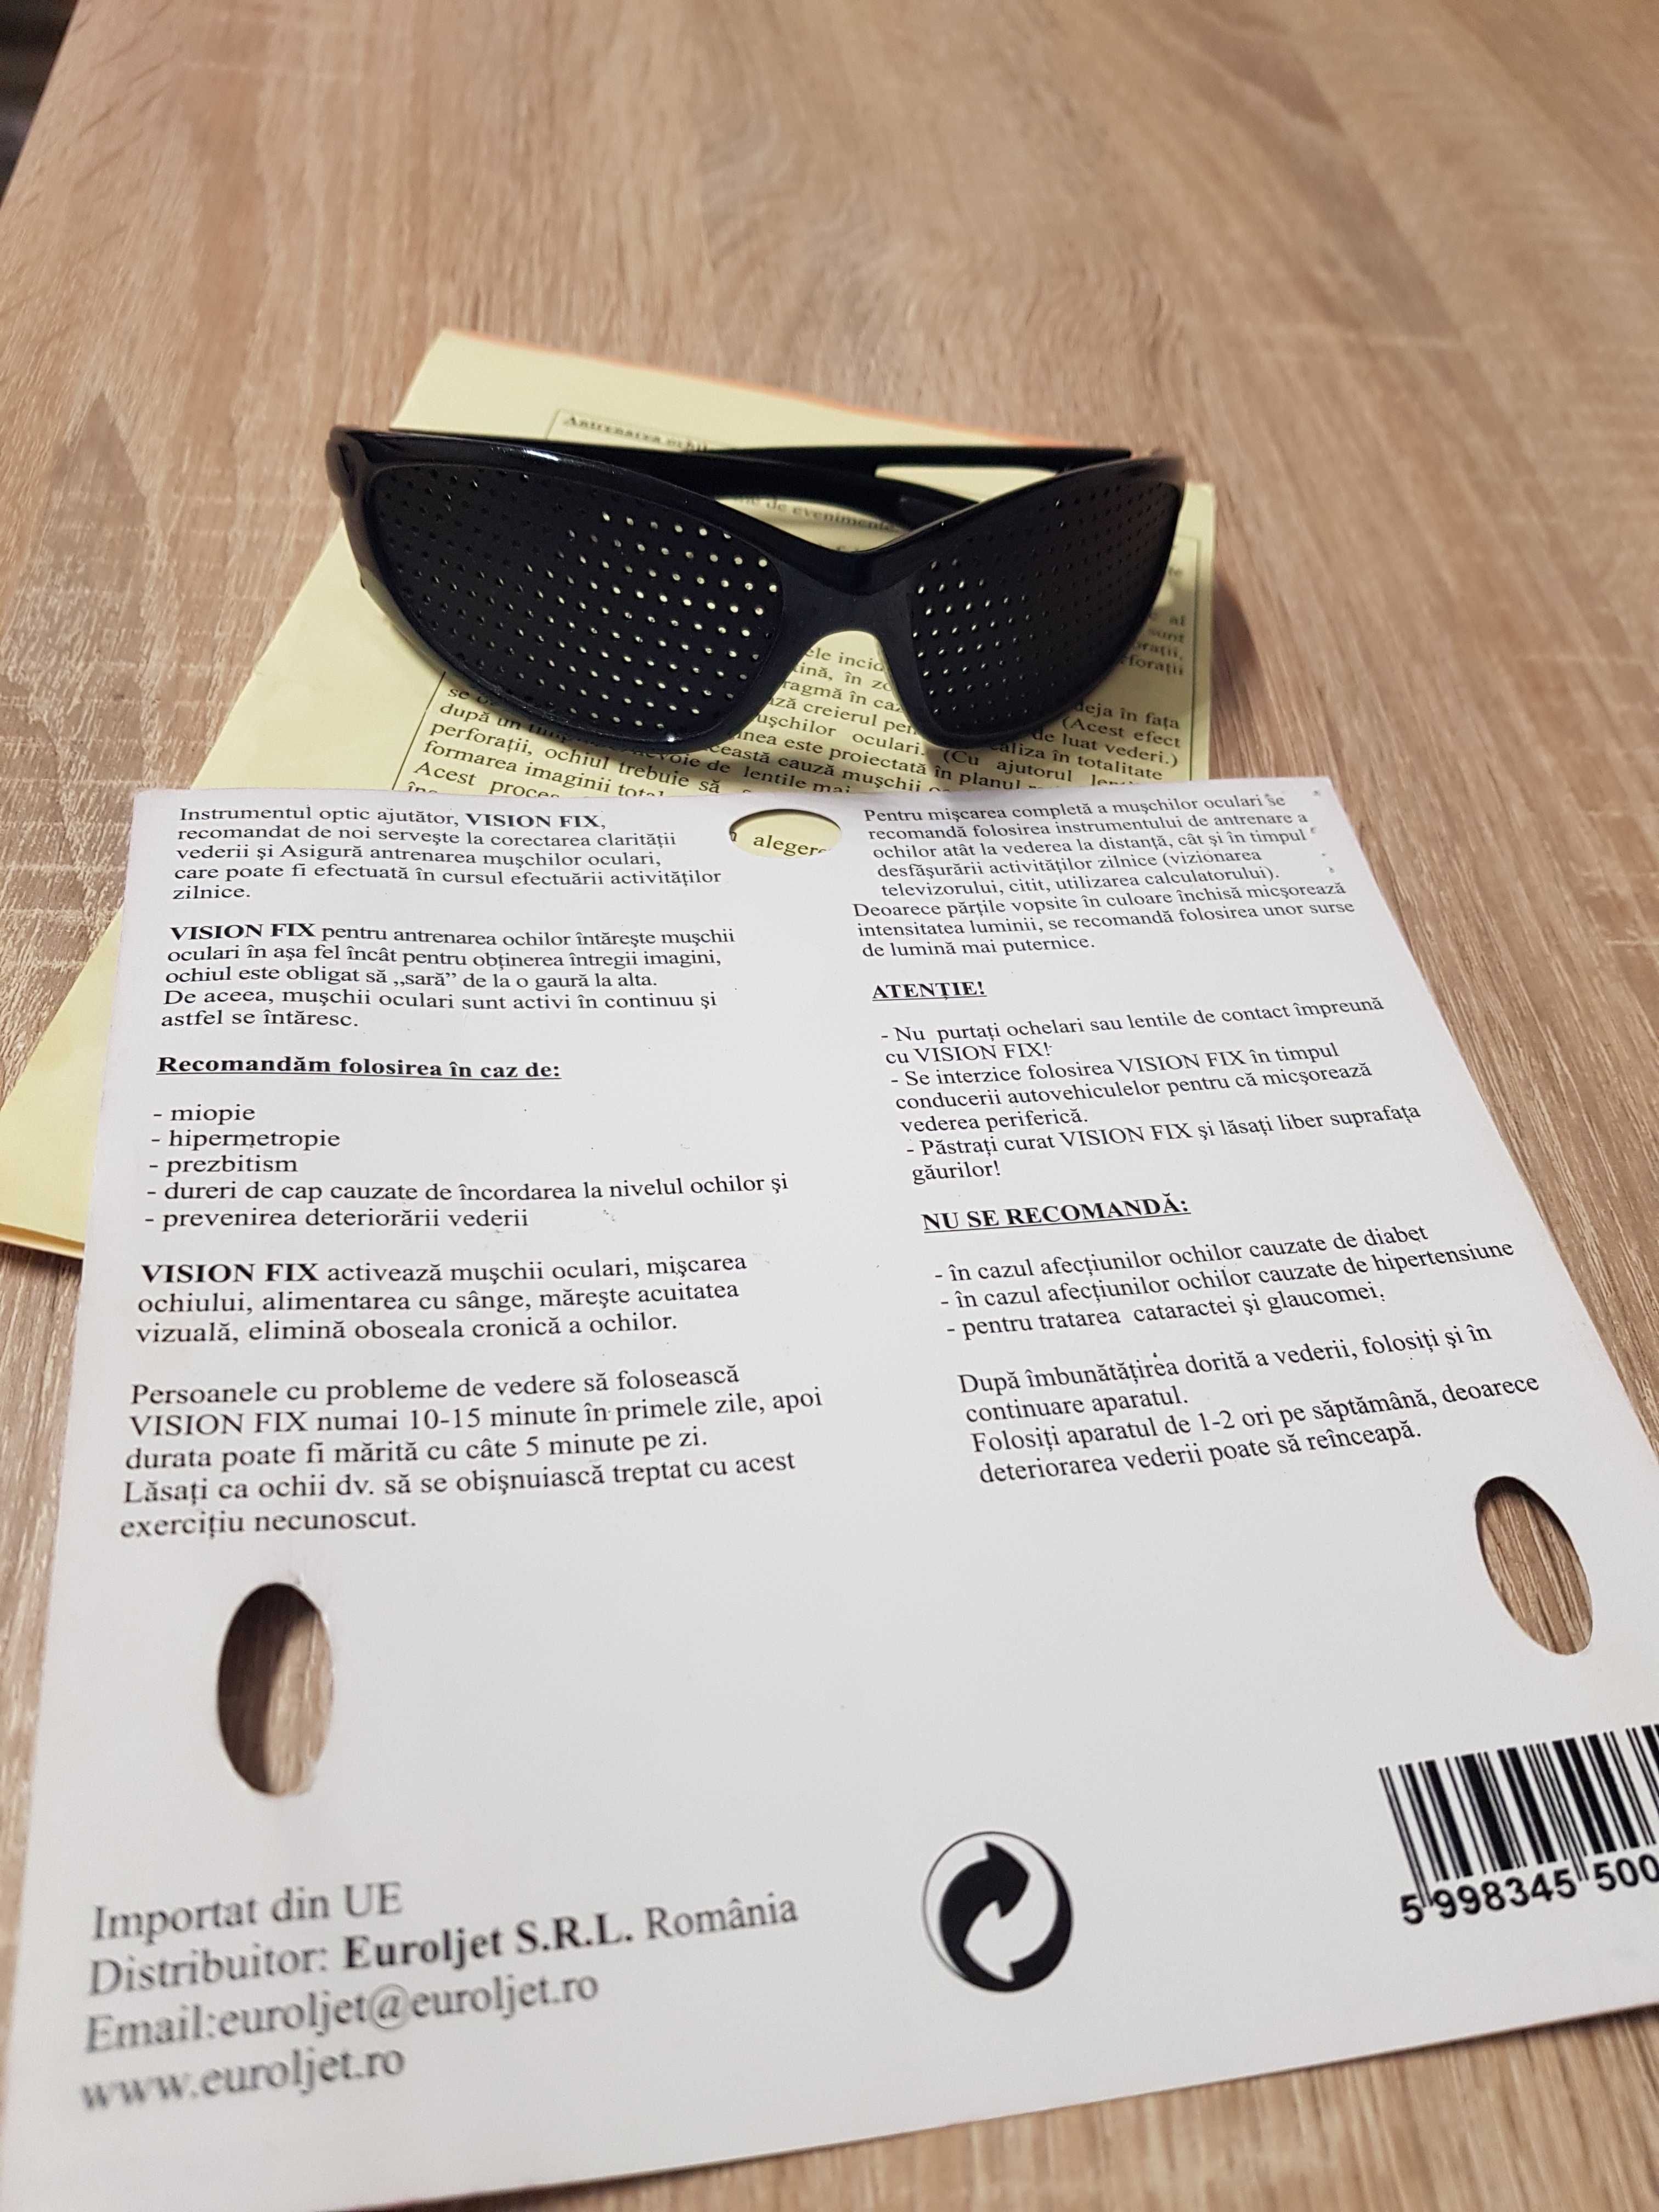 Ochelari pentru remedierea vederii, ochelari stenopici cu perforatii.